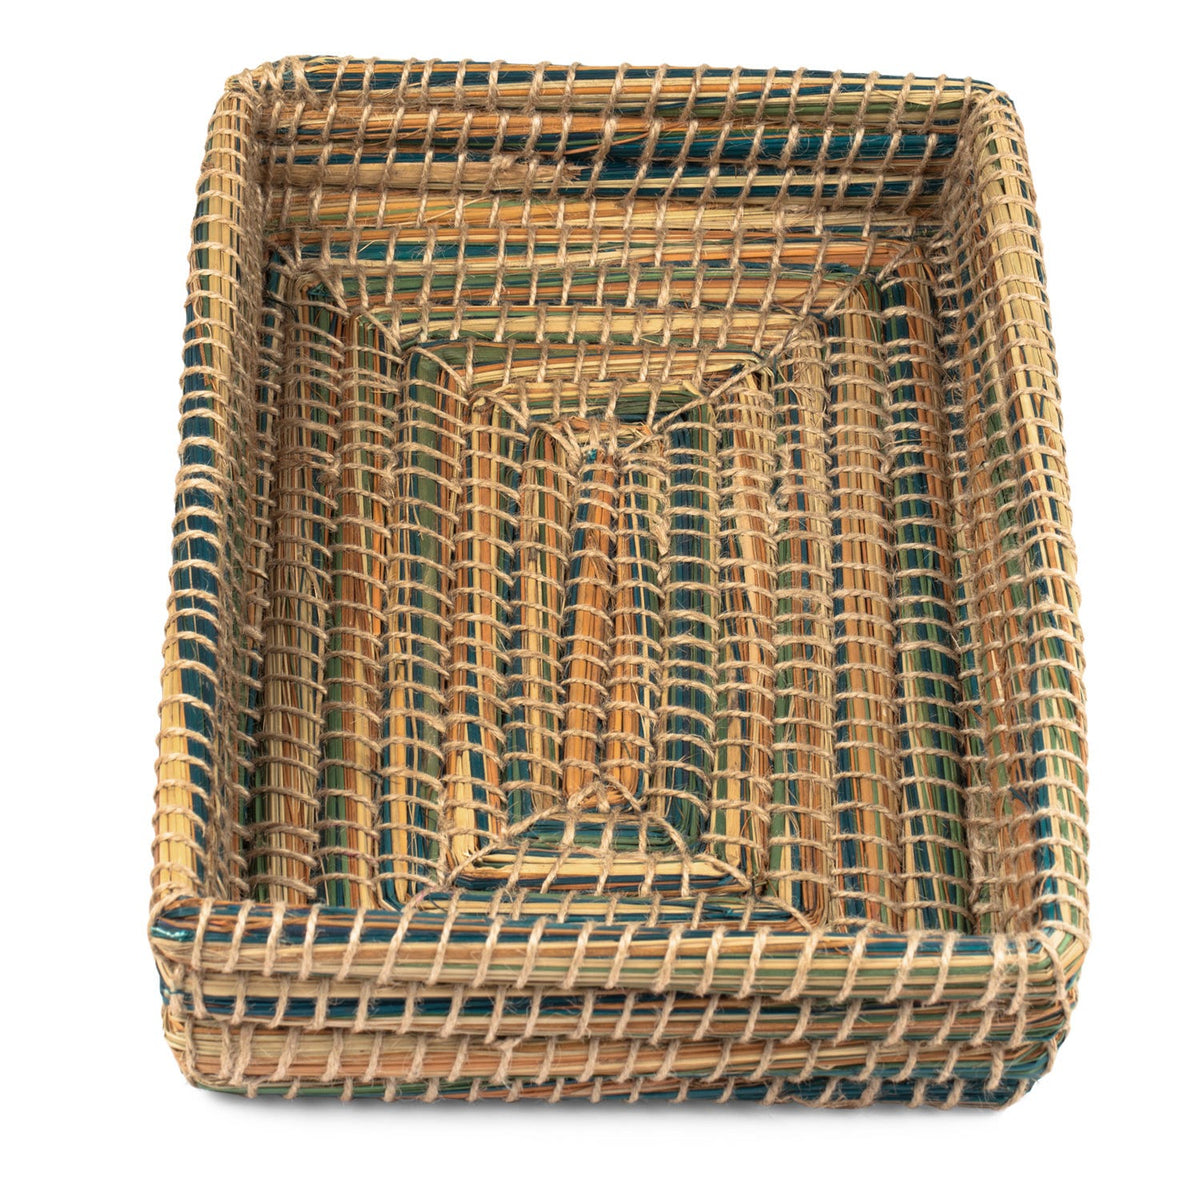 Wicker Casserole Serving Basket